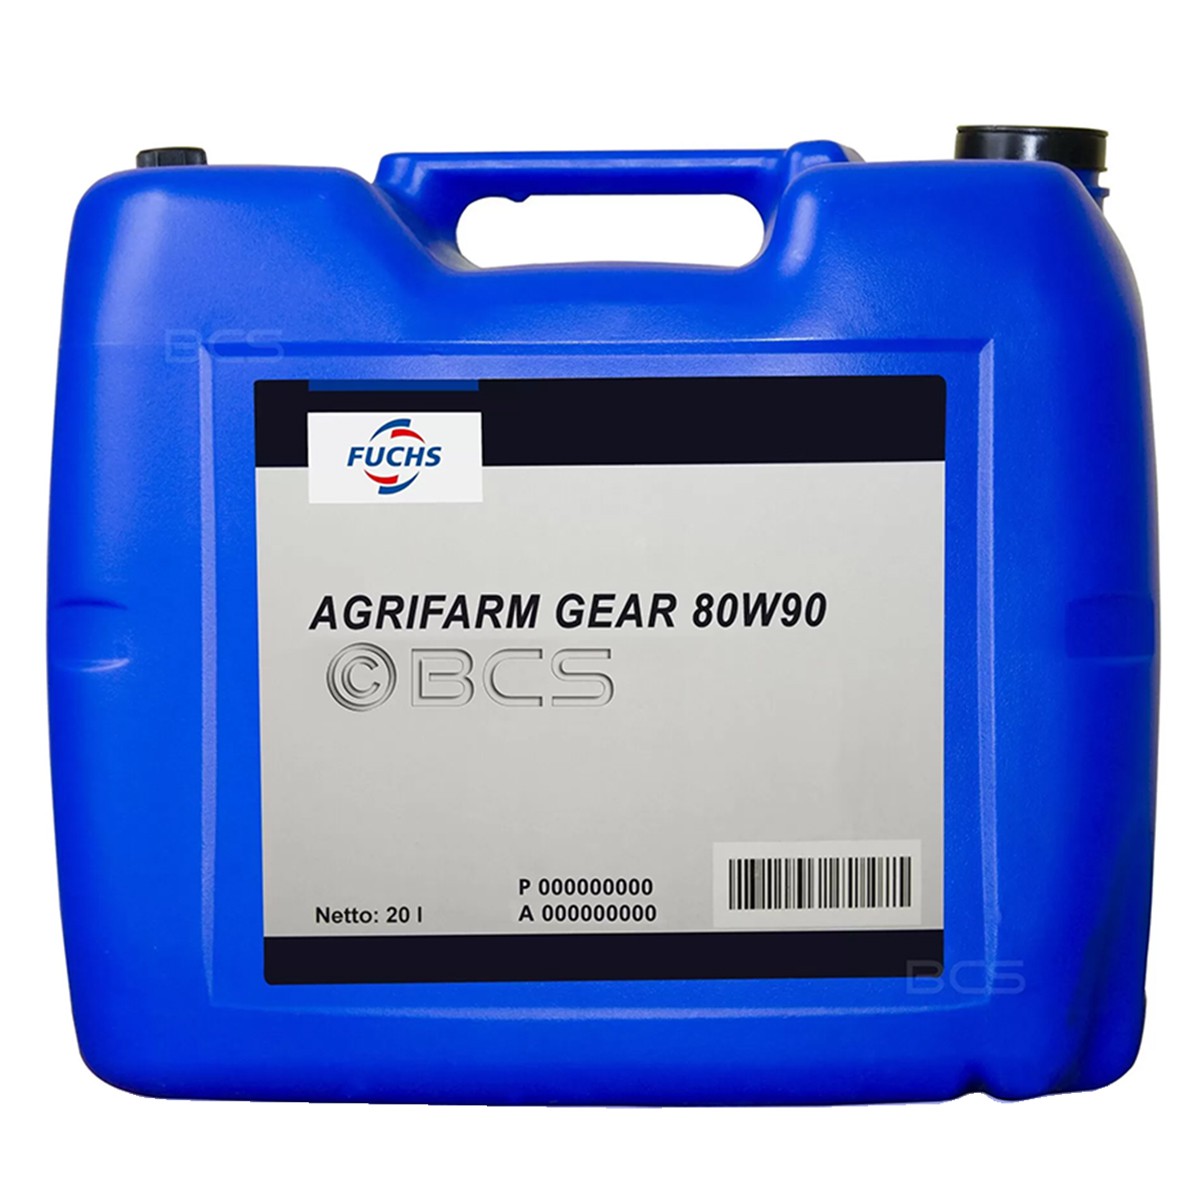 Fuchs Agrifarm GEAR 80W90 / 20 L gear oil